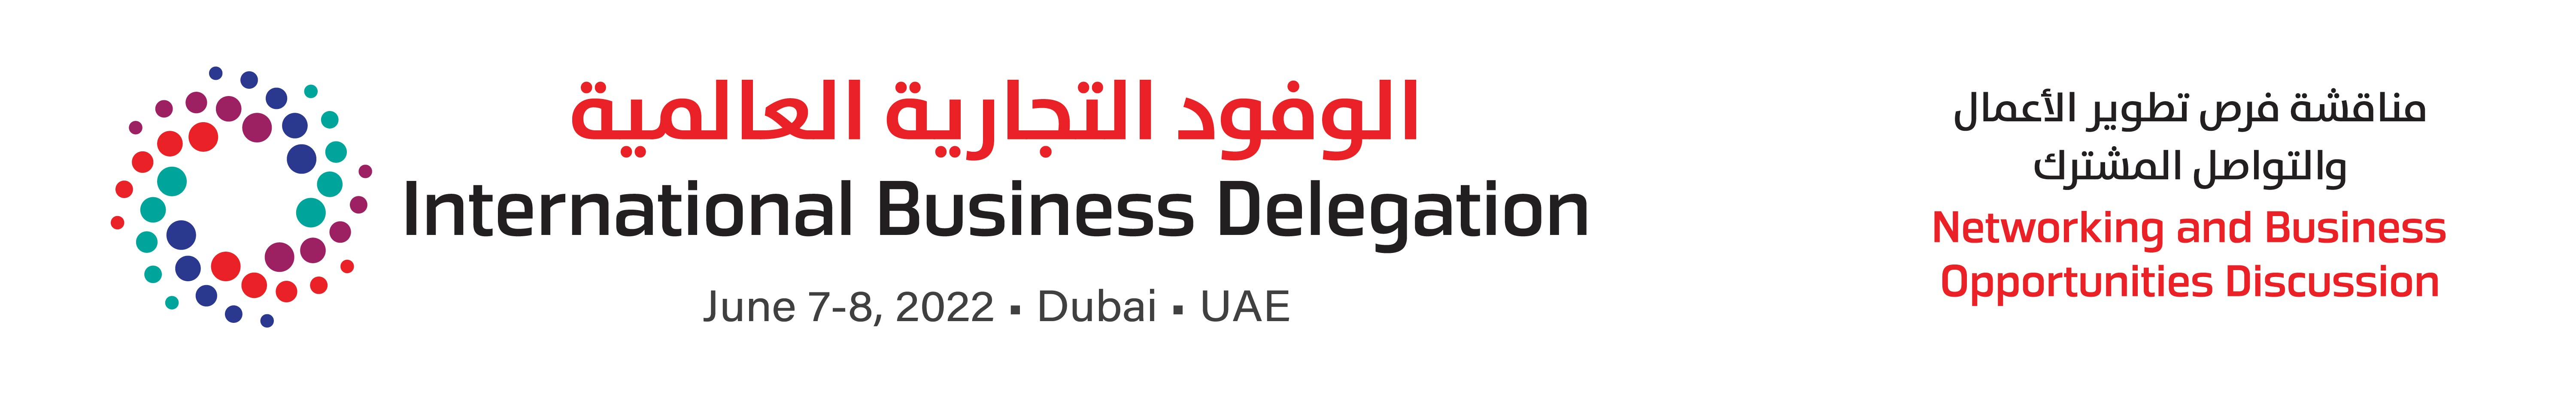 International Business Delegation